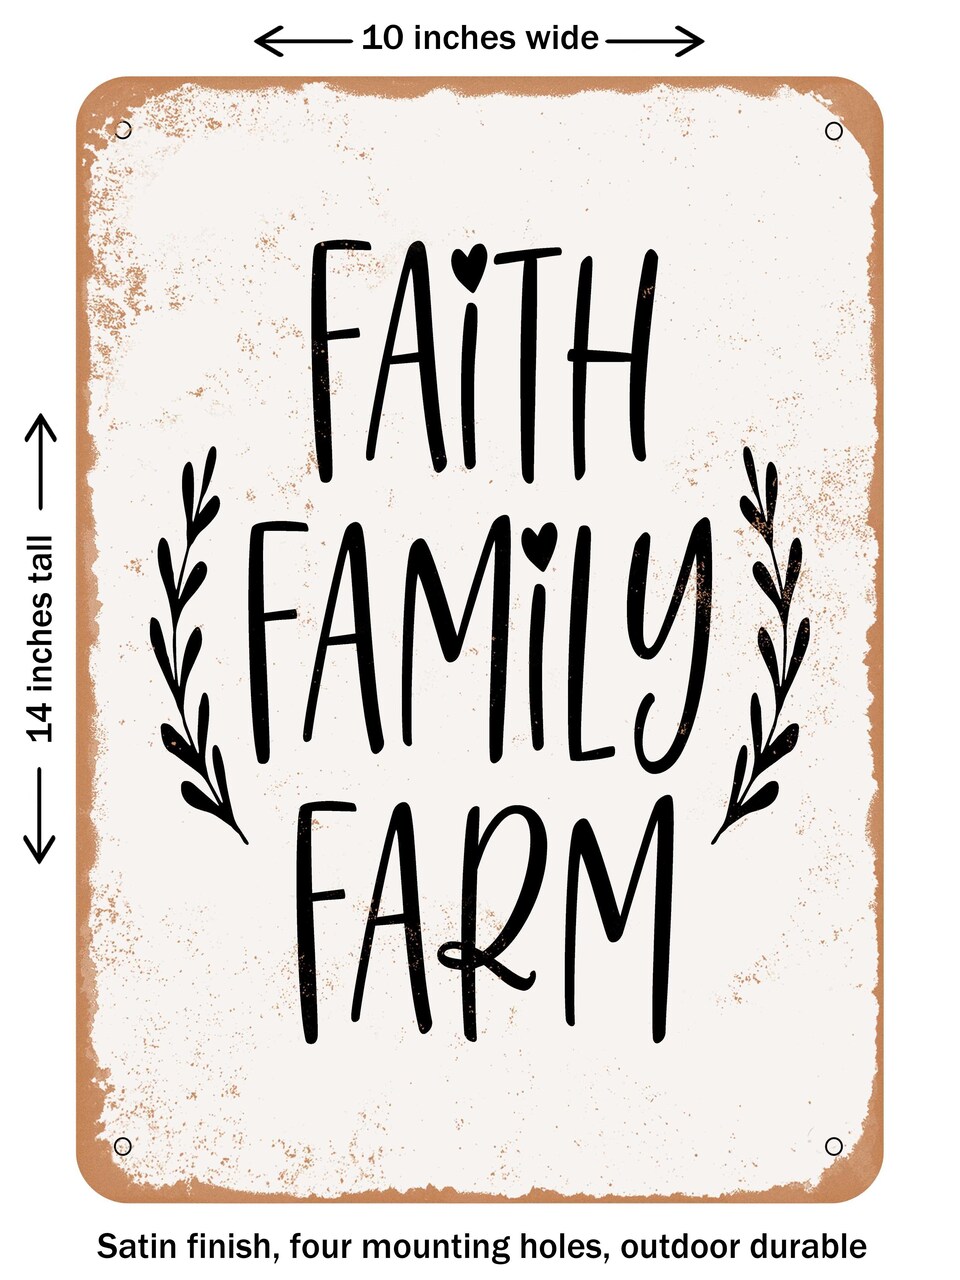 DECORATIVE METAL SIGN - Faith Family Farm  - Vintage Rusty Look